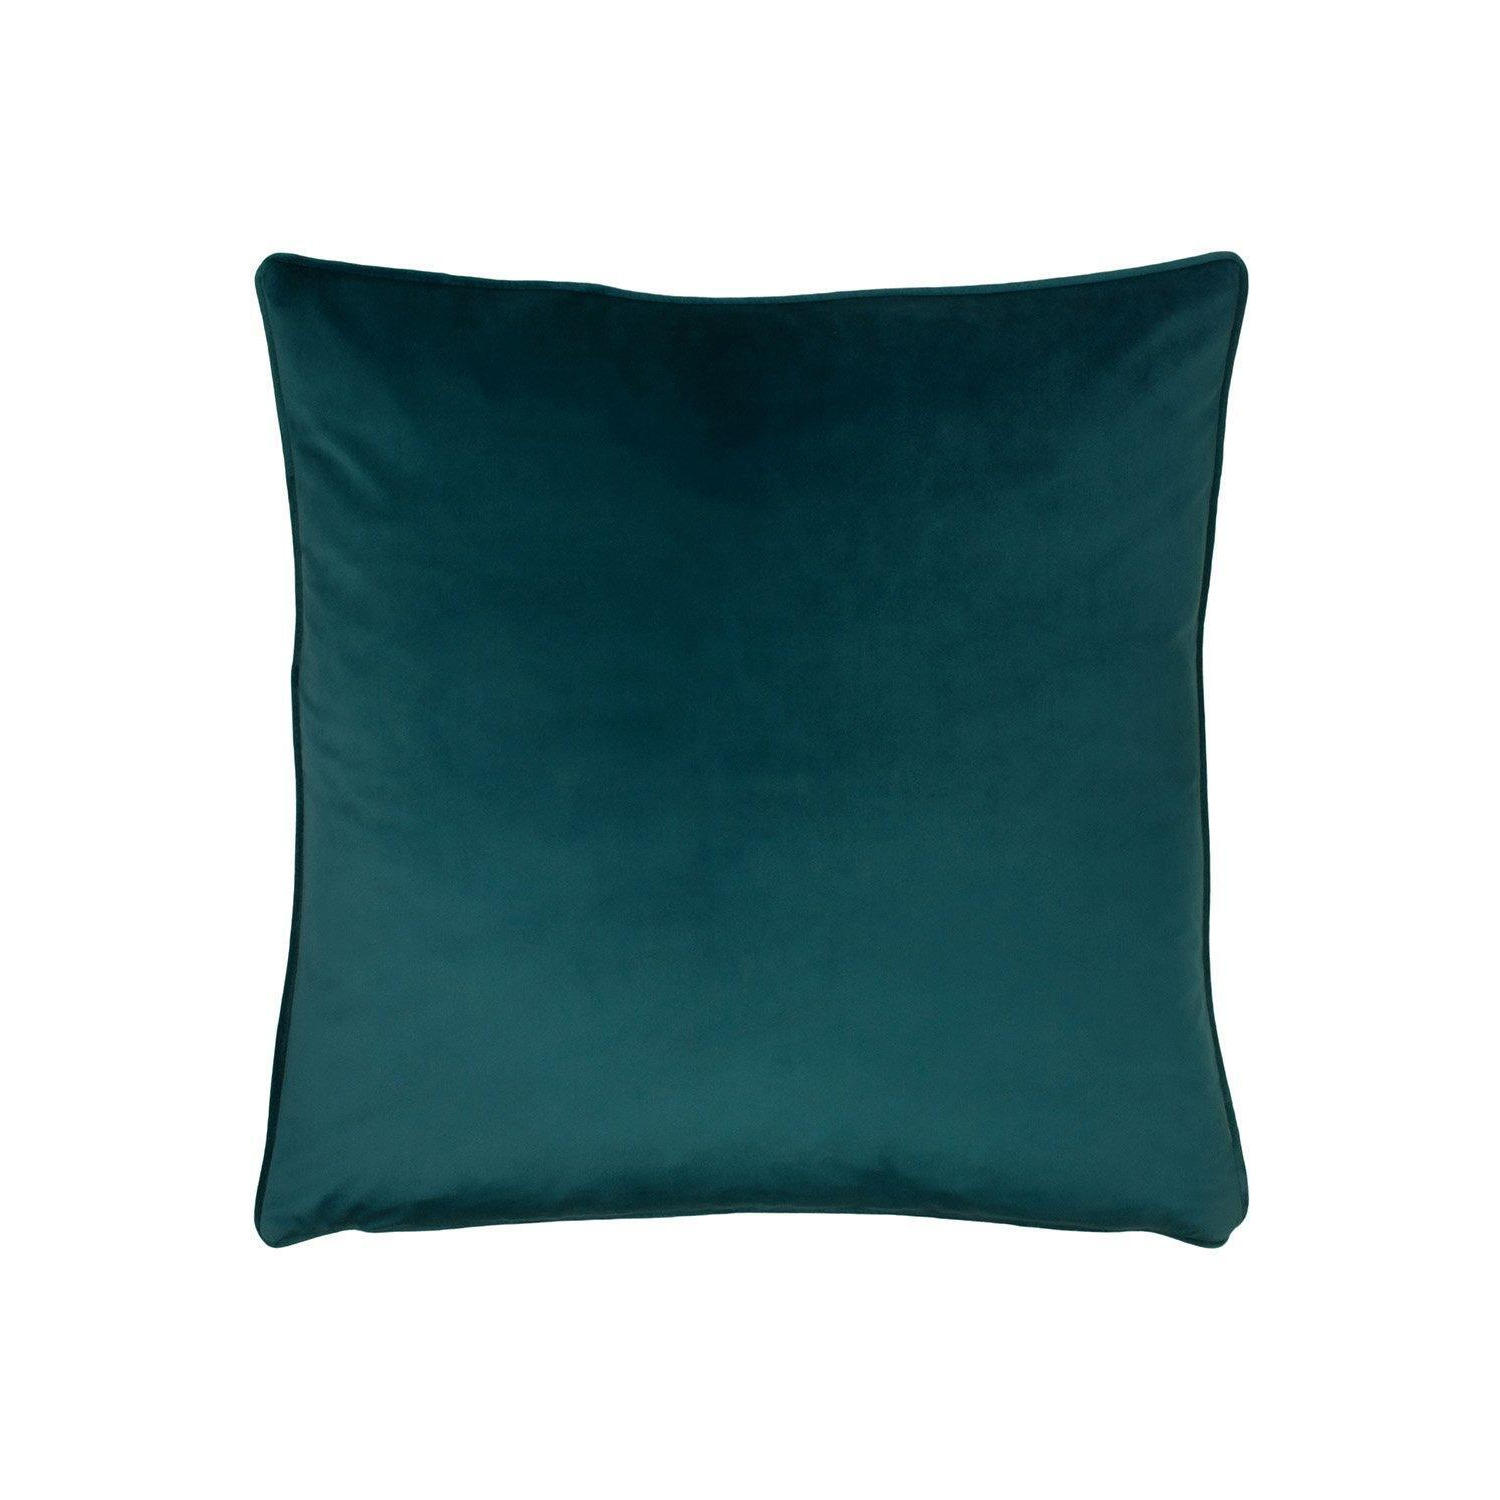 Opulence Soft Velvet Piped Cushion - image 1